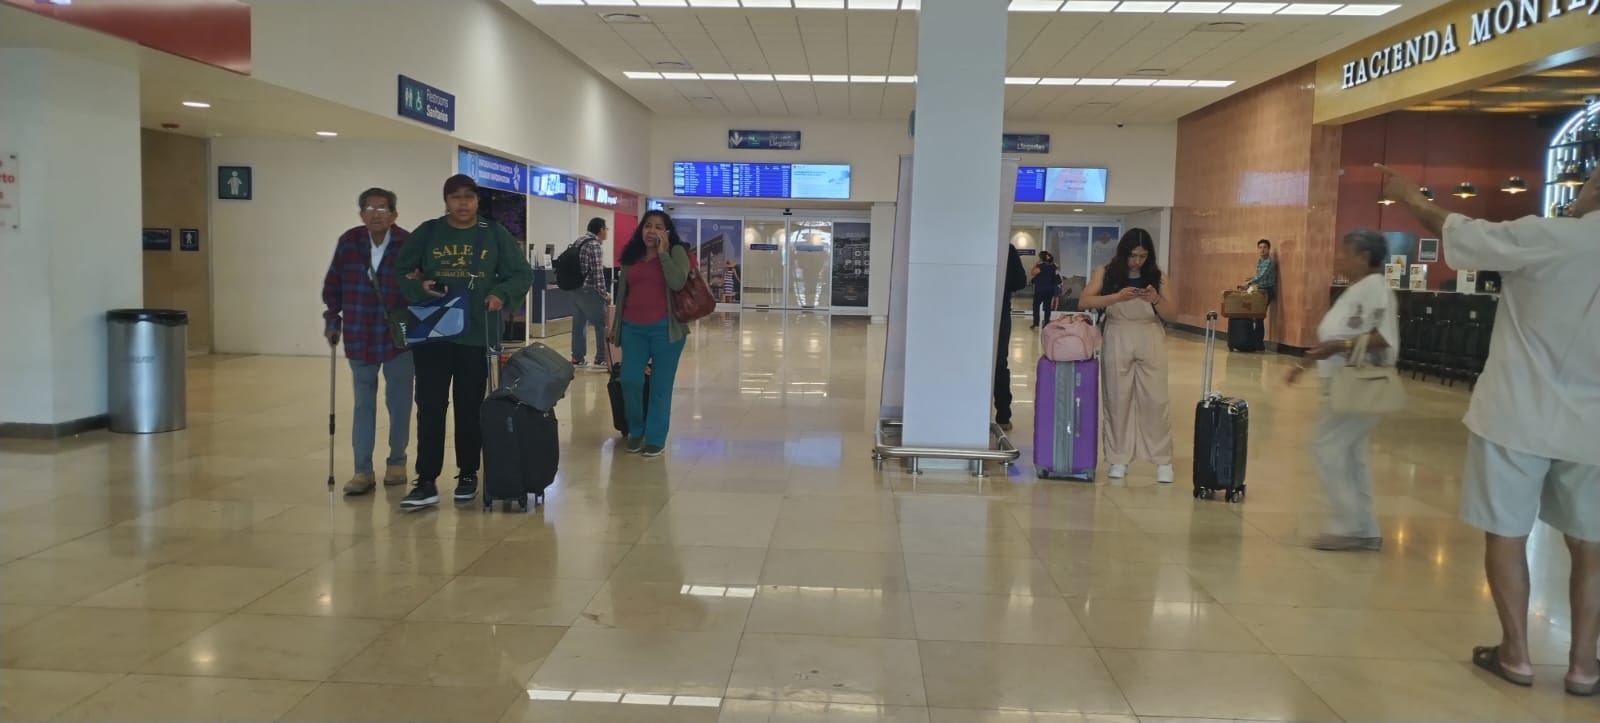 El Aeropuerto de Mérida registra buena movilidad de pasajeros este sábado